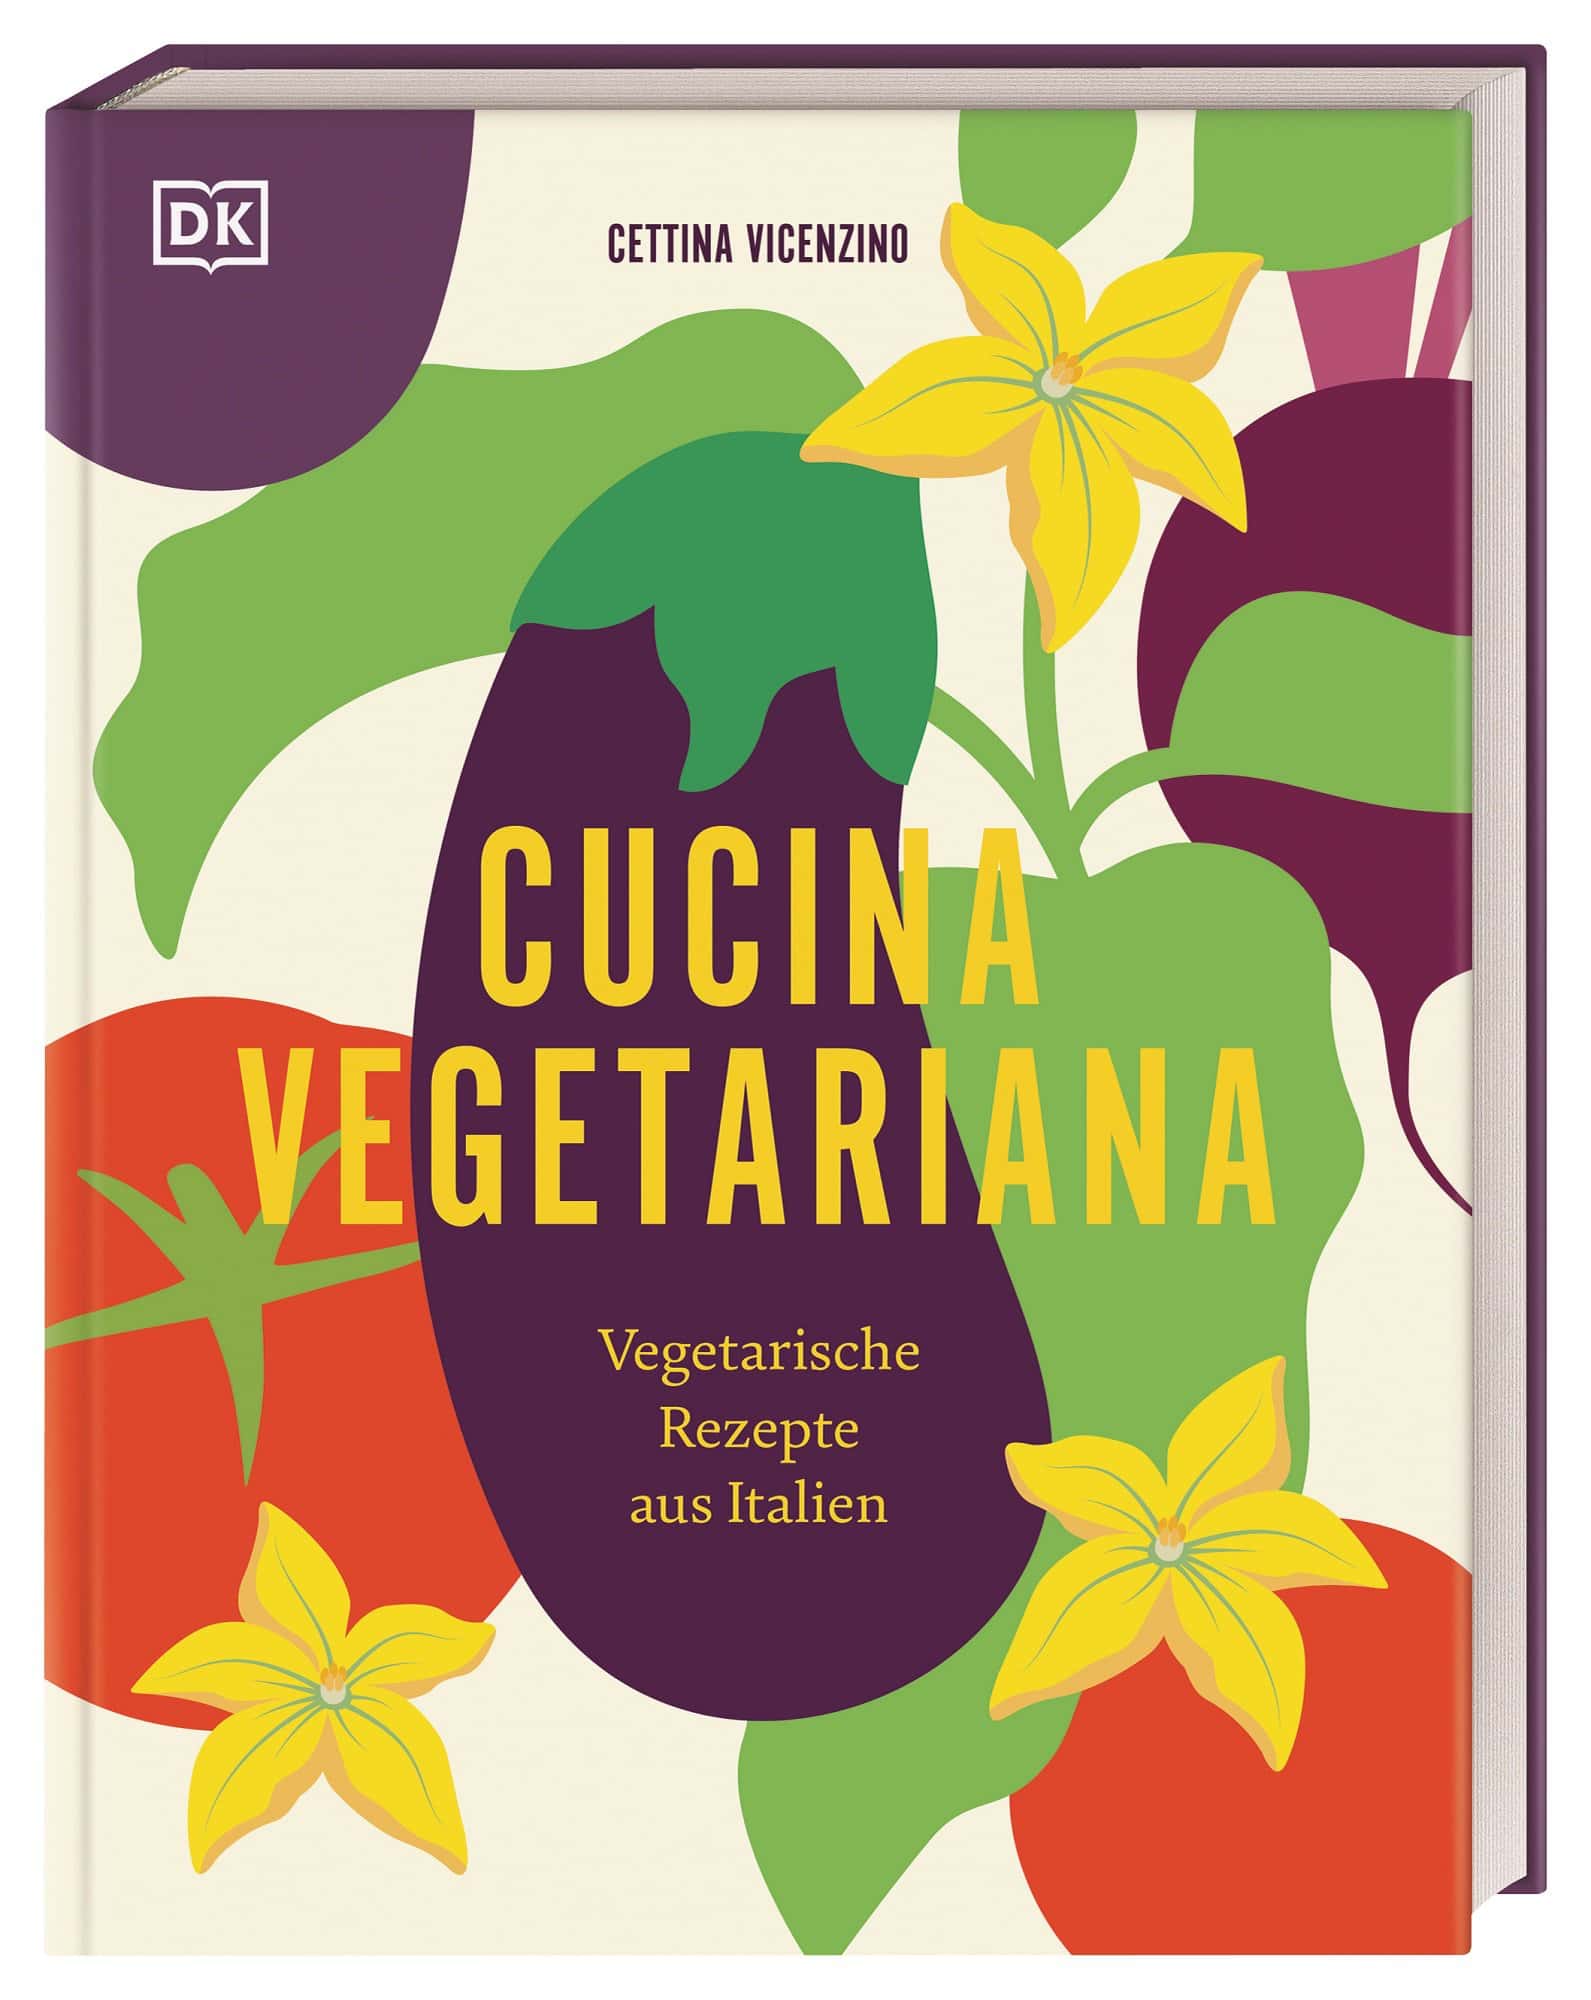 Buchcover "Cucina Vegetariana"